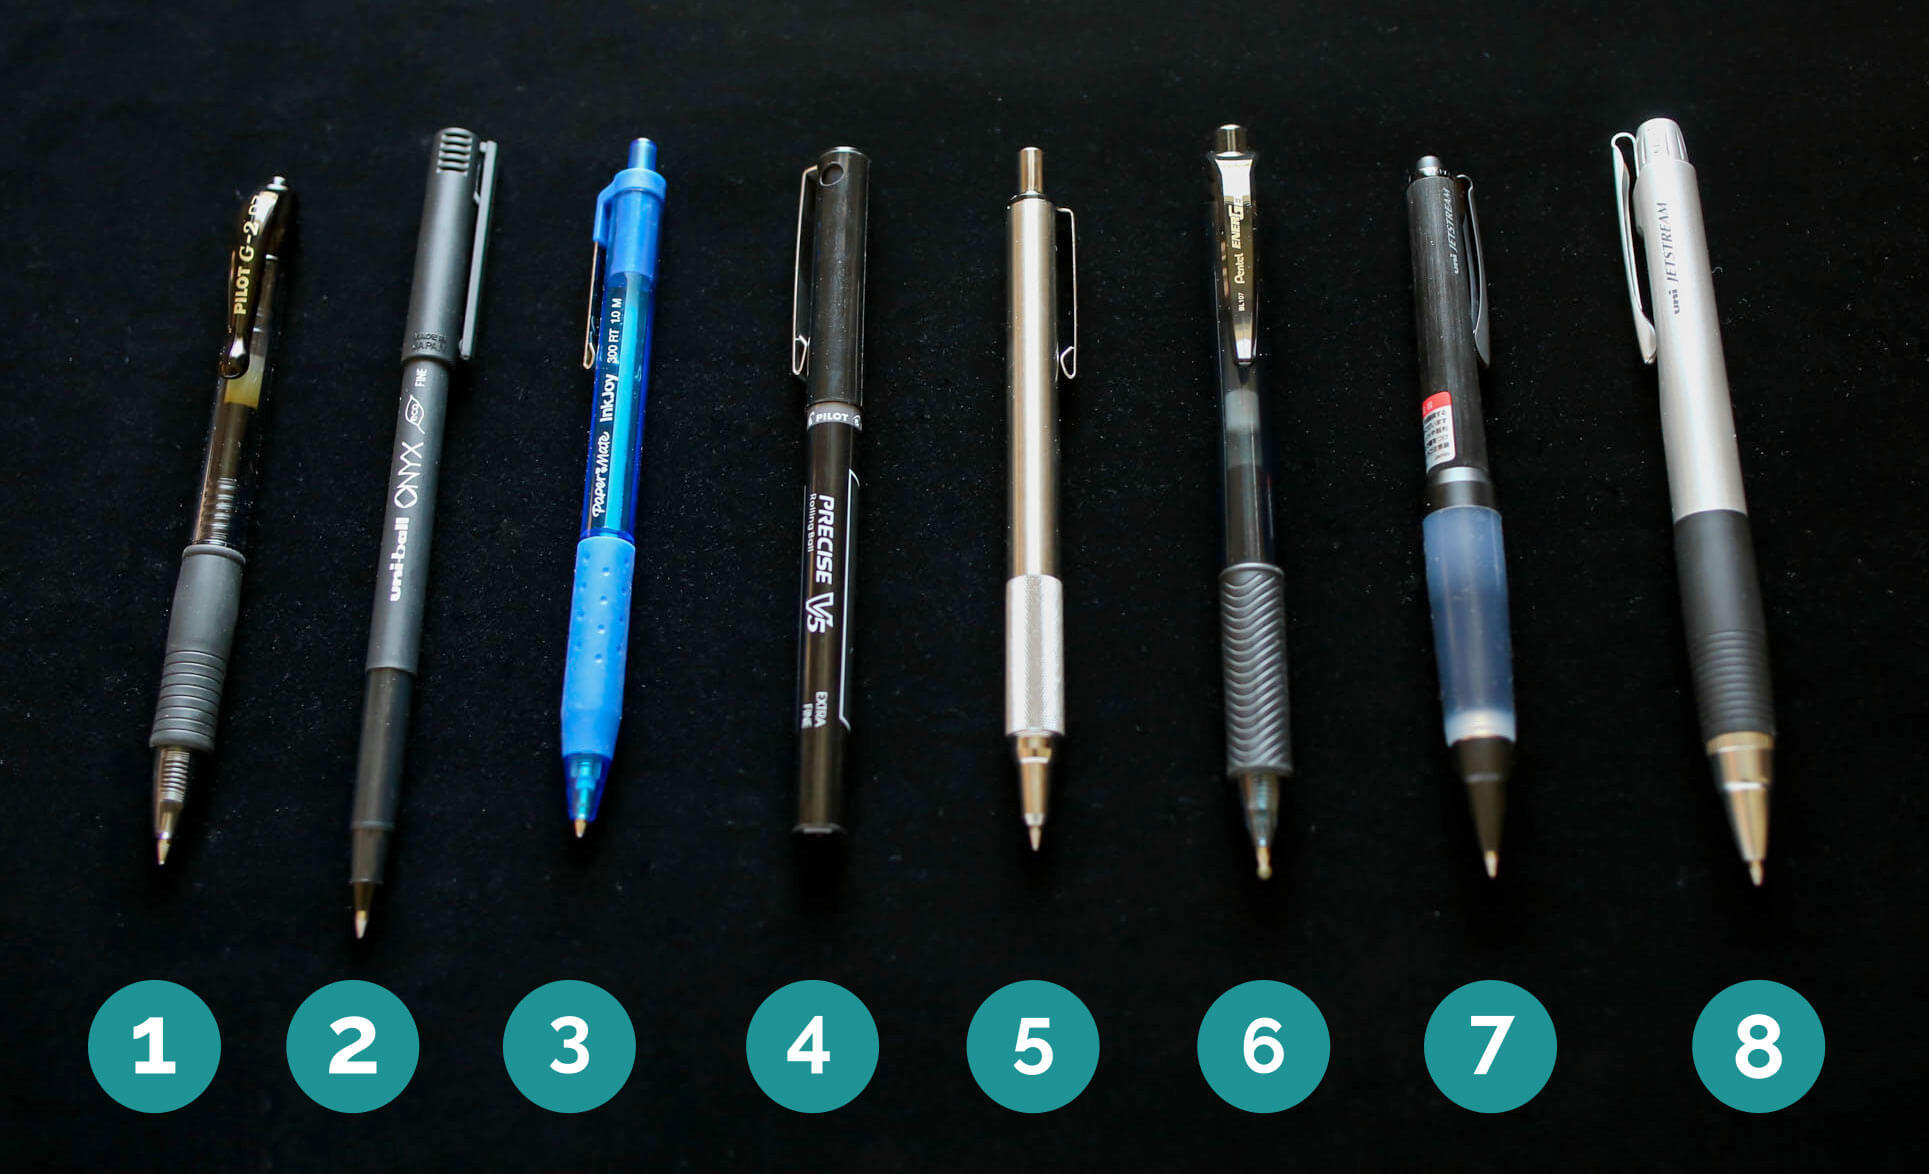 Uniball Jetstream 101 12 Pack, 1.0mm Medium Black, Wirecutter Best Pen,  Ballpoint Pens, Ballpoint Ink Pens, Office Supplies, Ballpoint Pen, Colored  Pens, Fine Point, Smooth Writing Pens